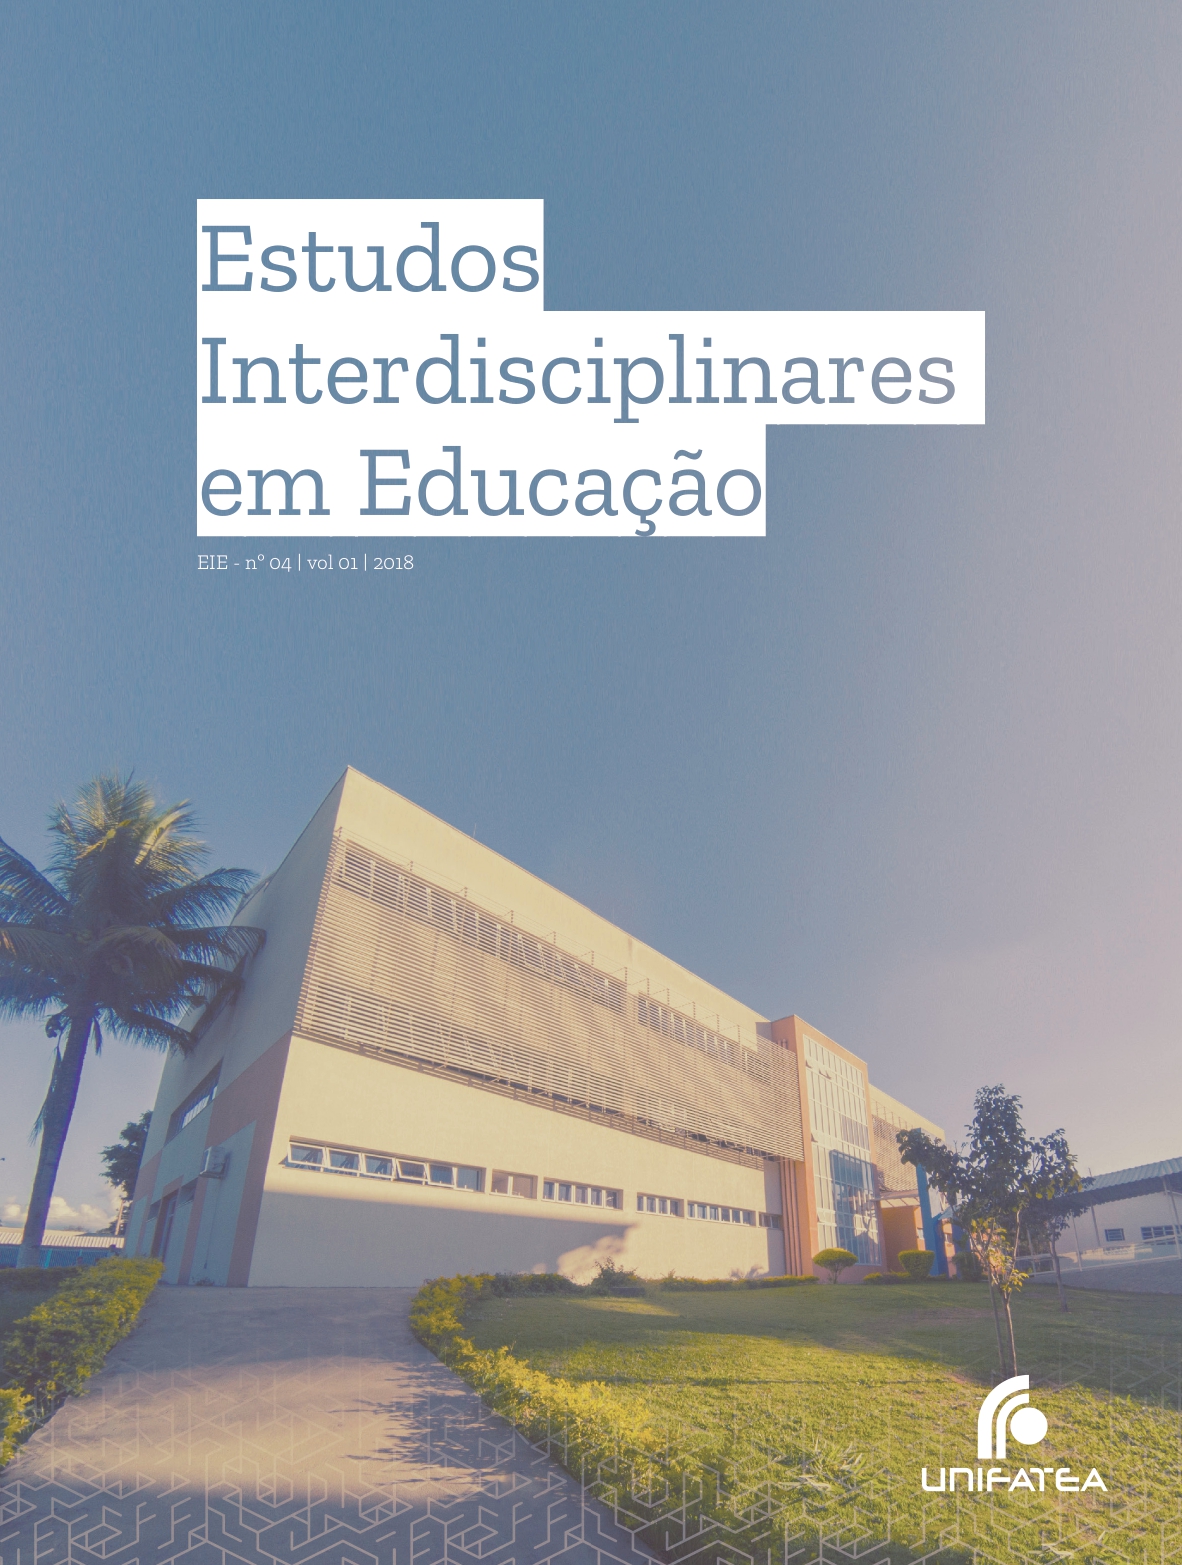 					View Vol. 1 No. 04 (2018): Estudos Interdisciplinares em Educação
				